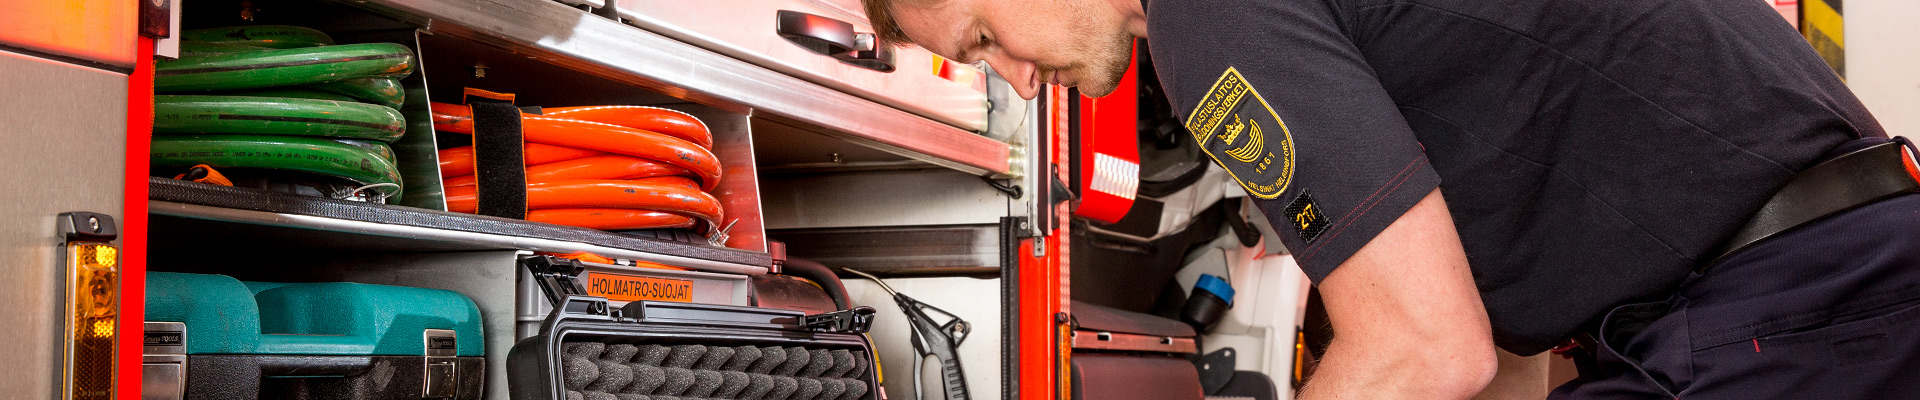 A firefighter checks equipments